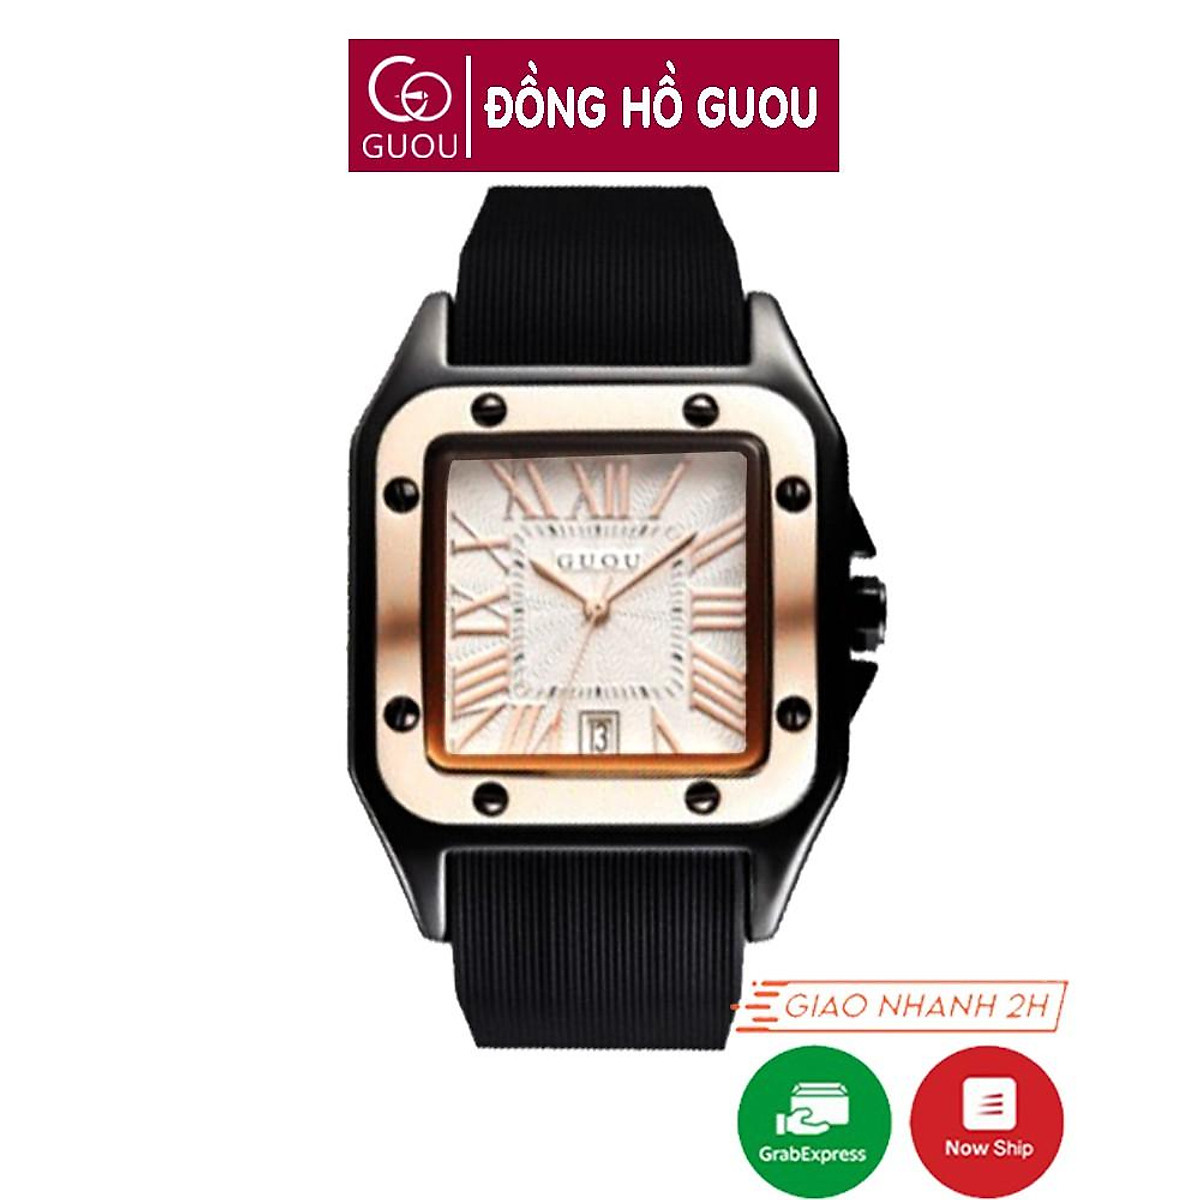 Đồng hồ Guou của nước nào? Đặc điểm nổi bật và giá cả của đồng hồ Guou -  Thegioididong.com